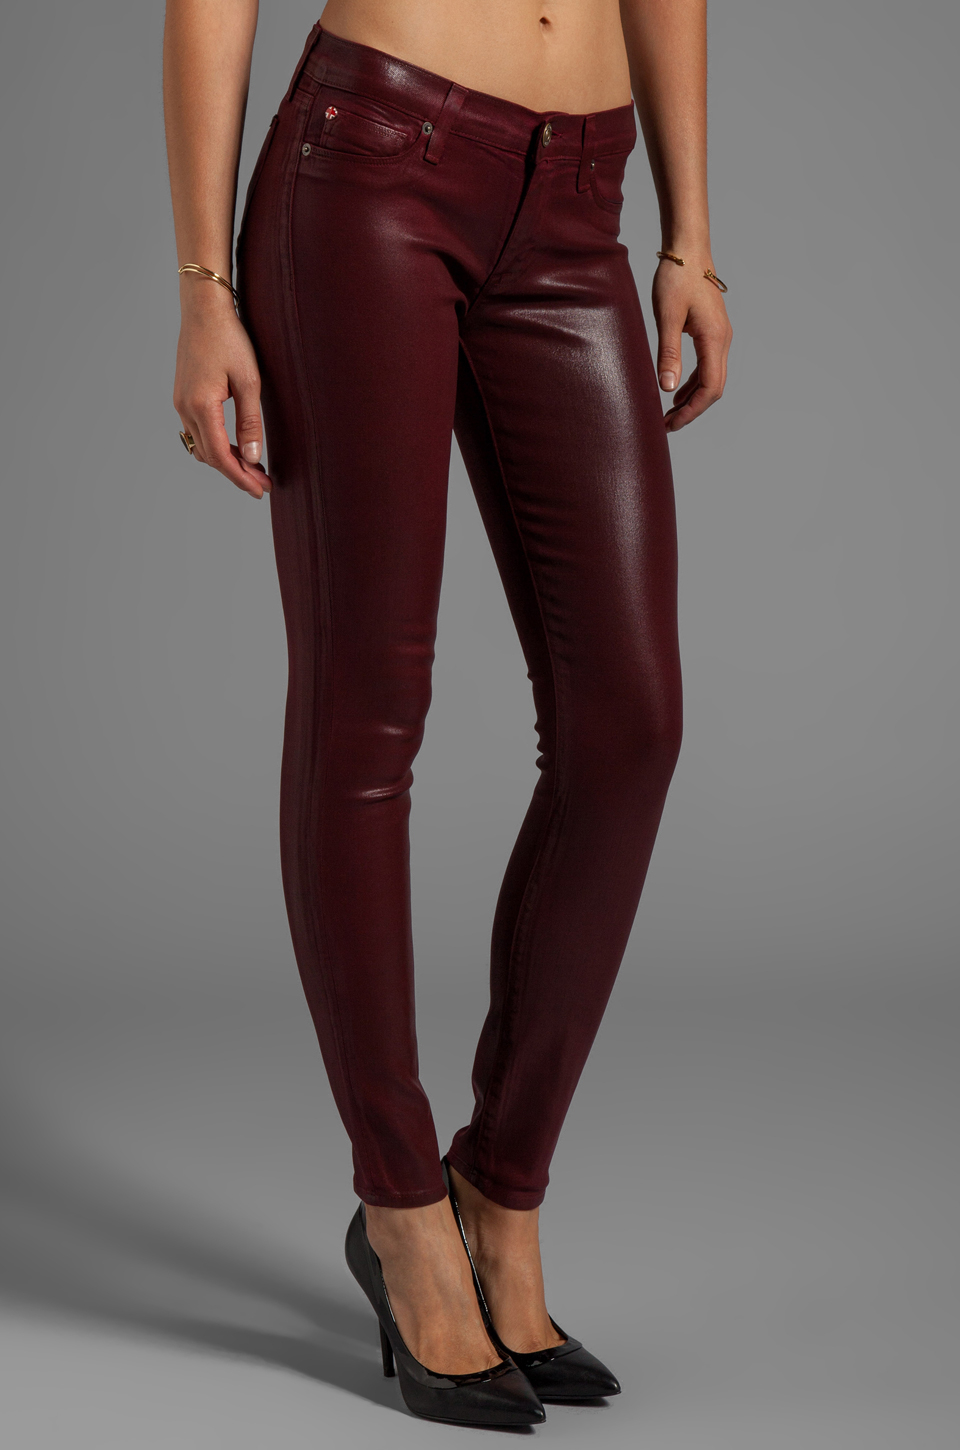 Lyst - Hudson Jeans Krista Skinny in Crimson Wax in Purple